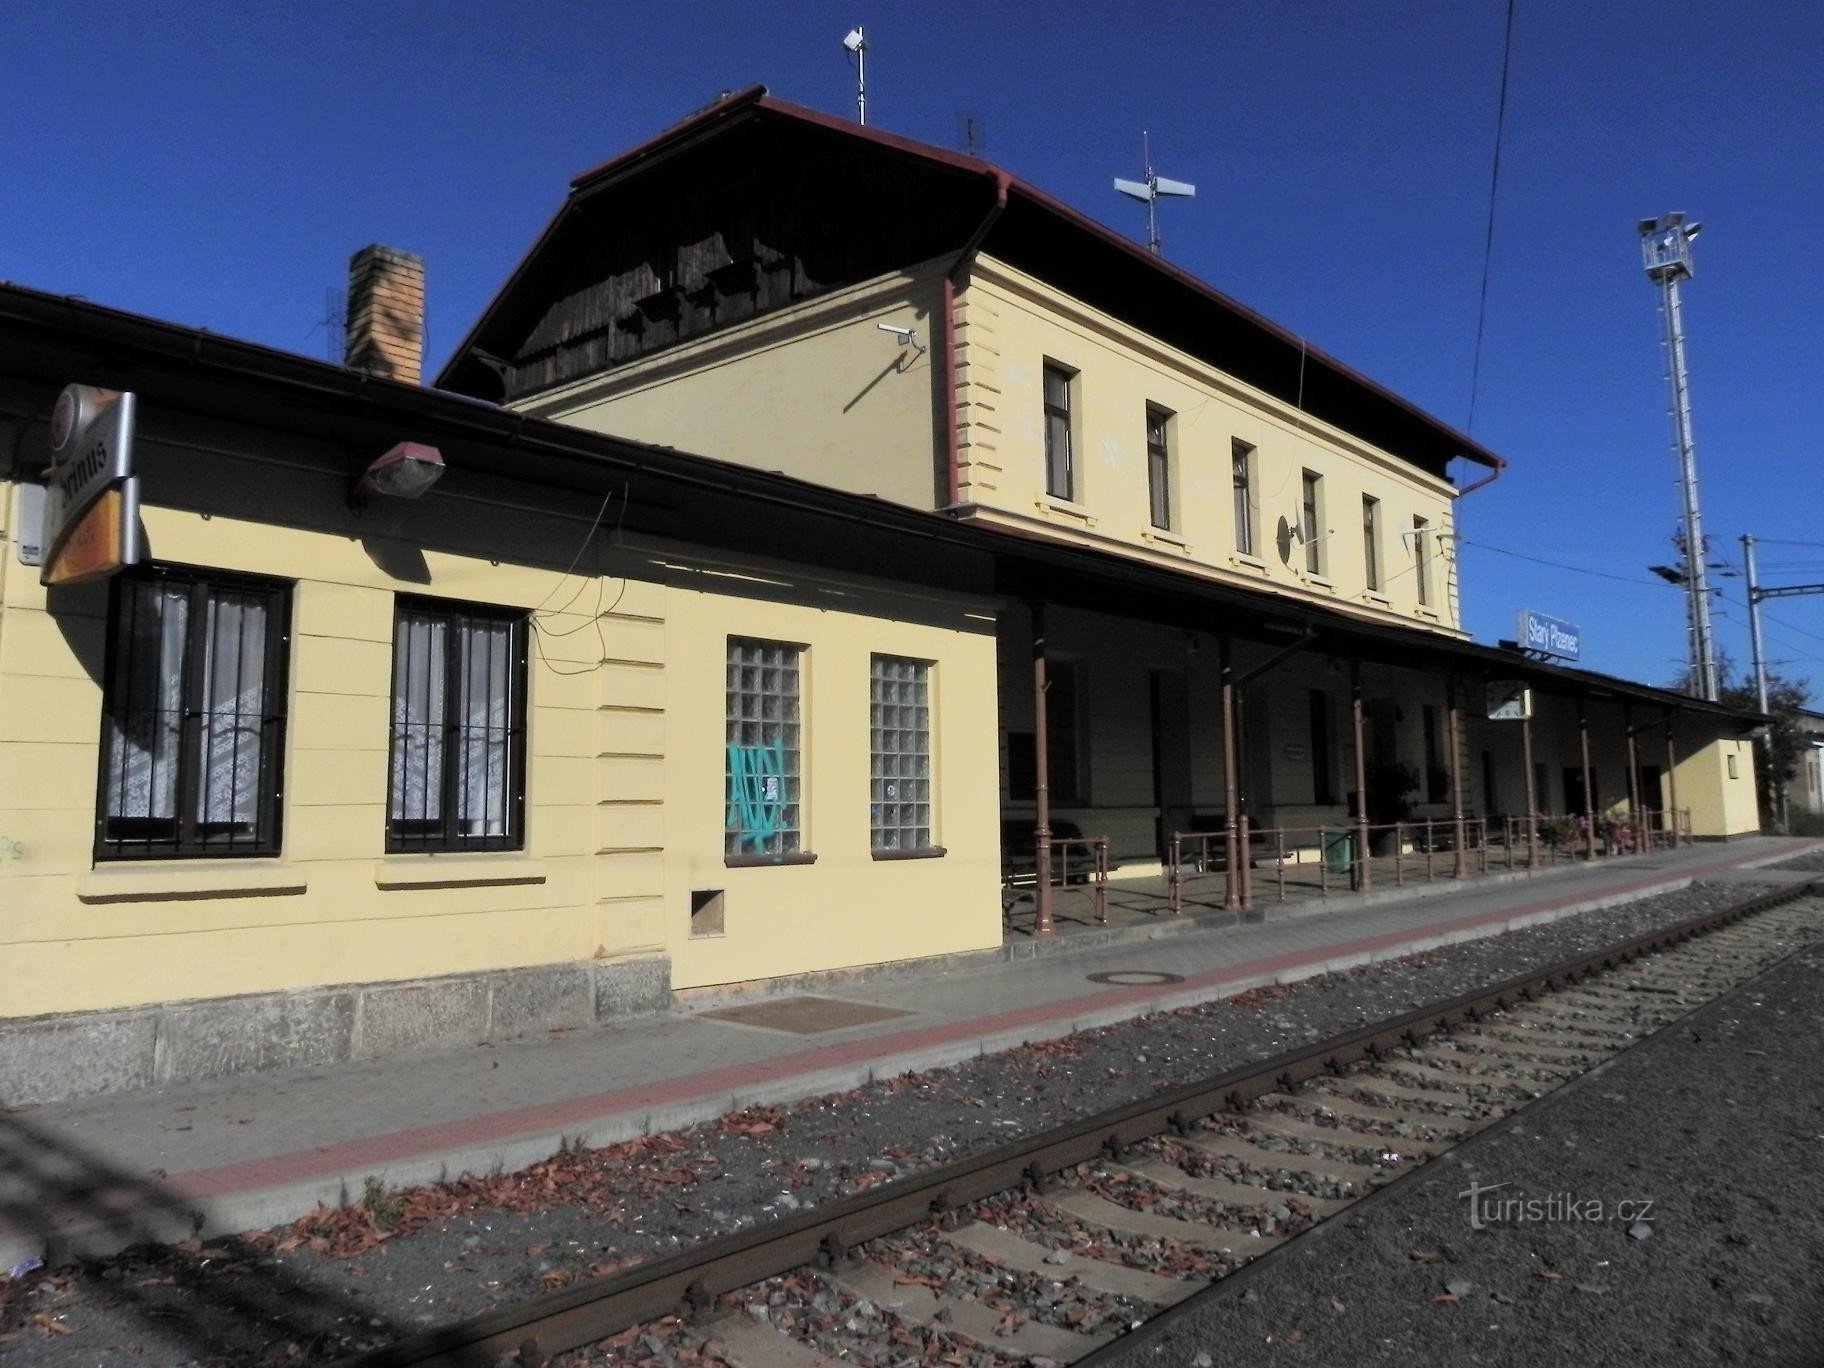 Starý Plzenec, estação ferroviária